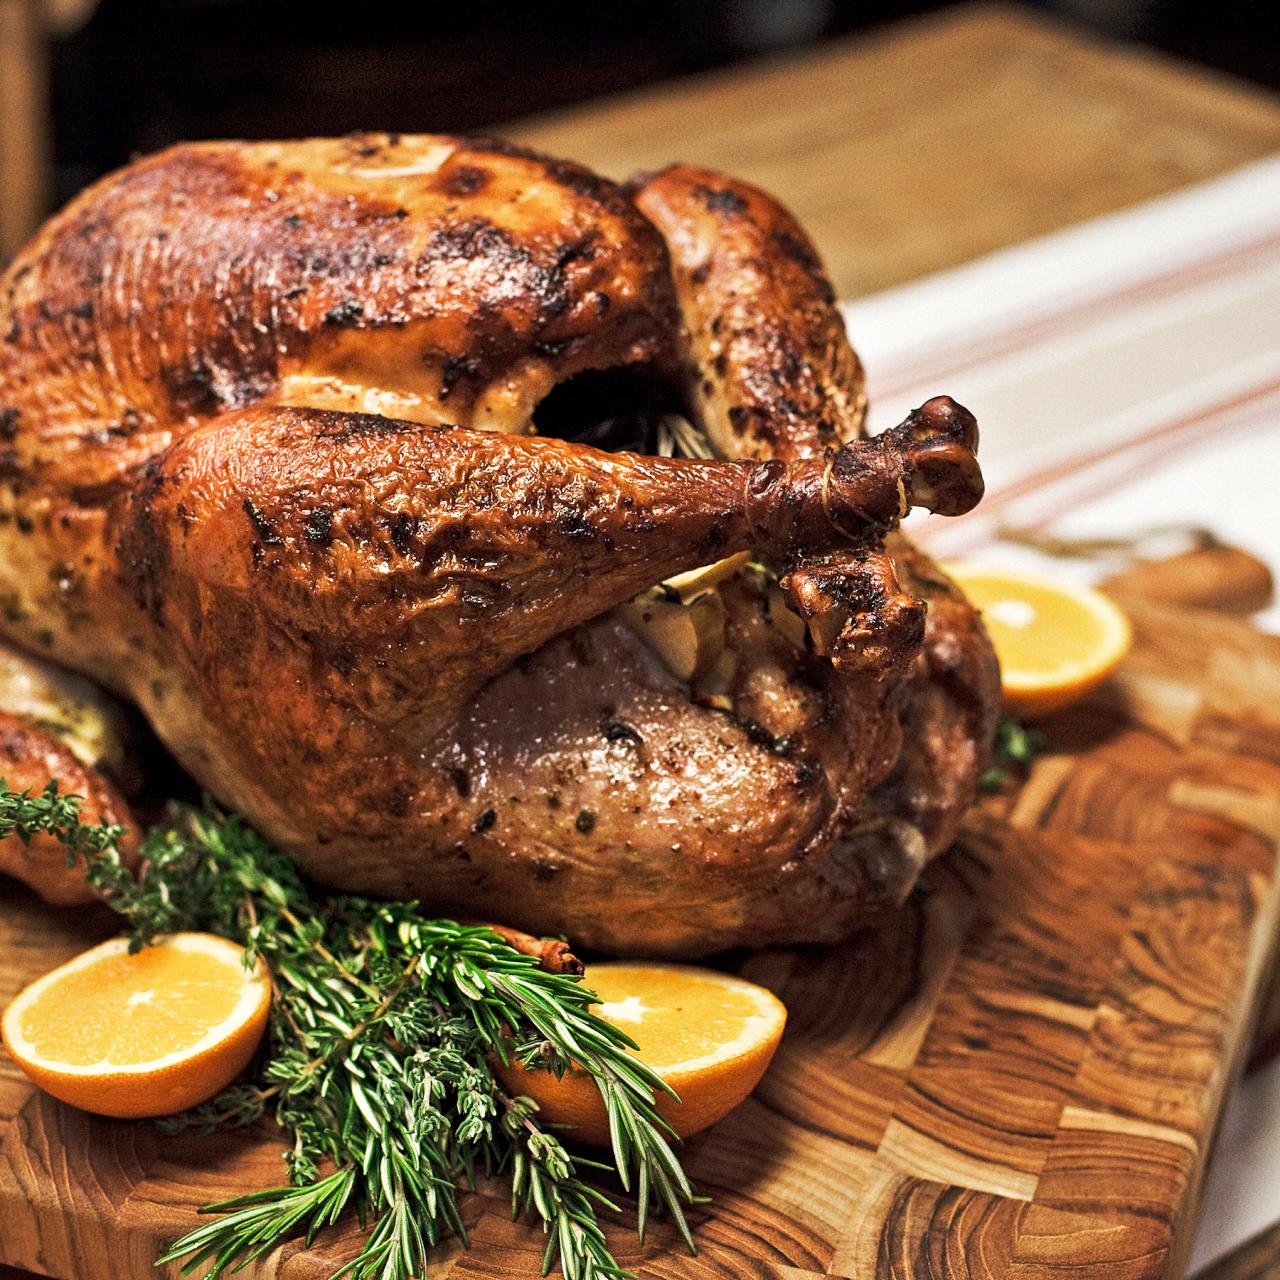 https://cook.fnr.sndimg.com/content/dam/images/cook/fullset/2011/10/13/2/ccwst_thanksgiving-turkey-recipe_s4x3.jpg.rend.hgtvcom.1280.1280.suffix/1351624670867.jpeg